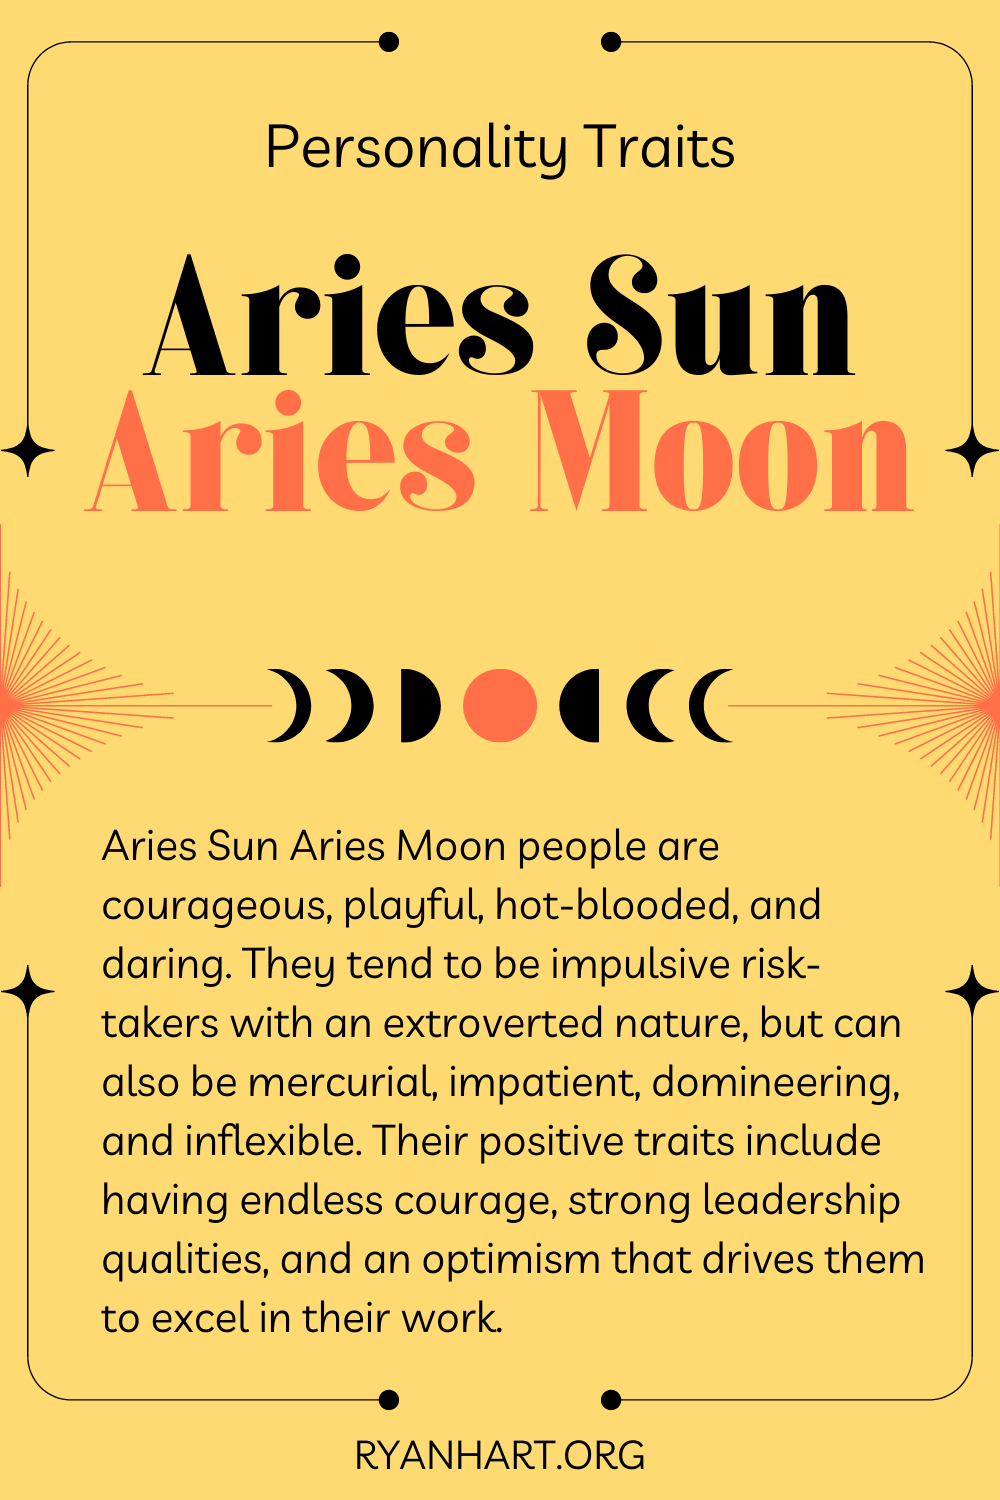 Aries Sun Aries Moon Description